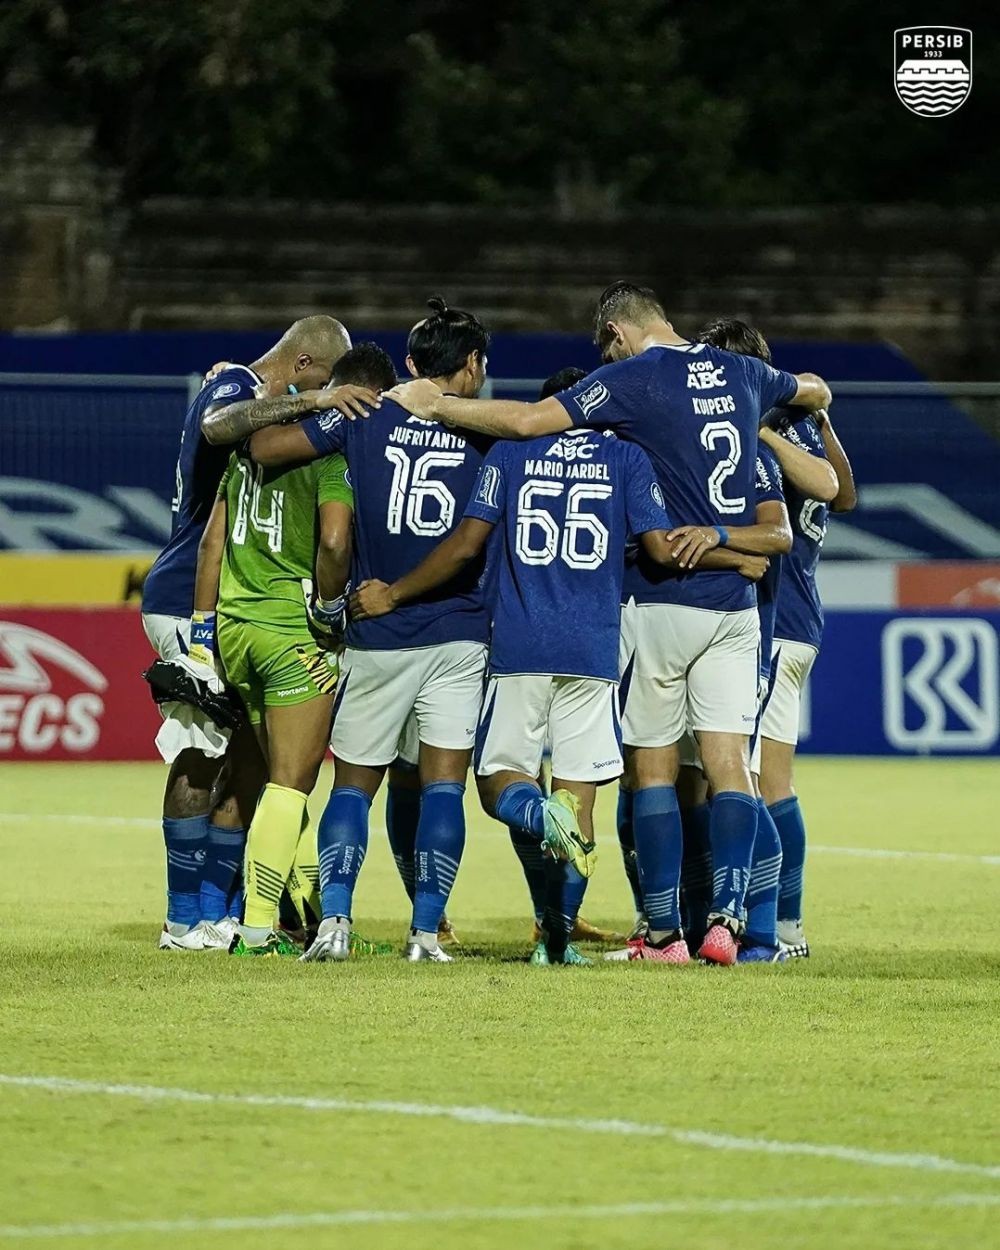 Persib Bandung Kehilangan 3 Pemain, Bali United Tampil Percaya Diri